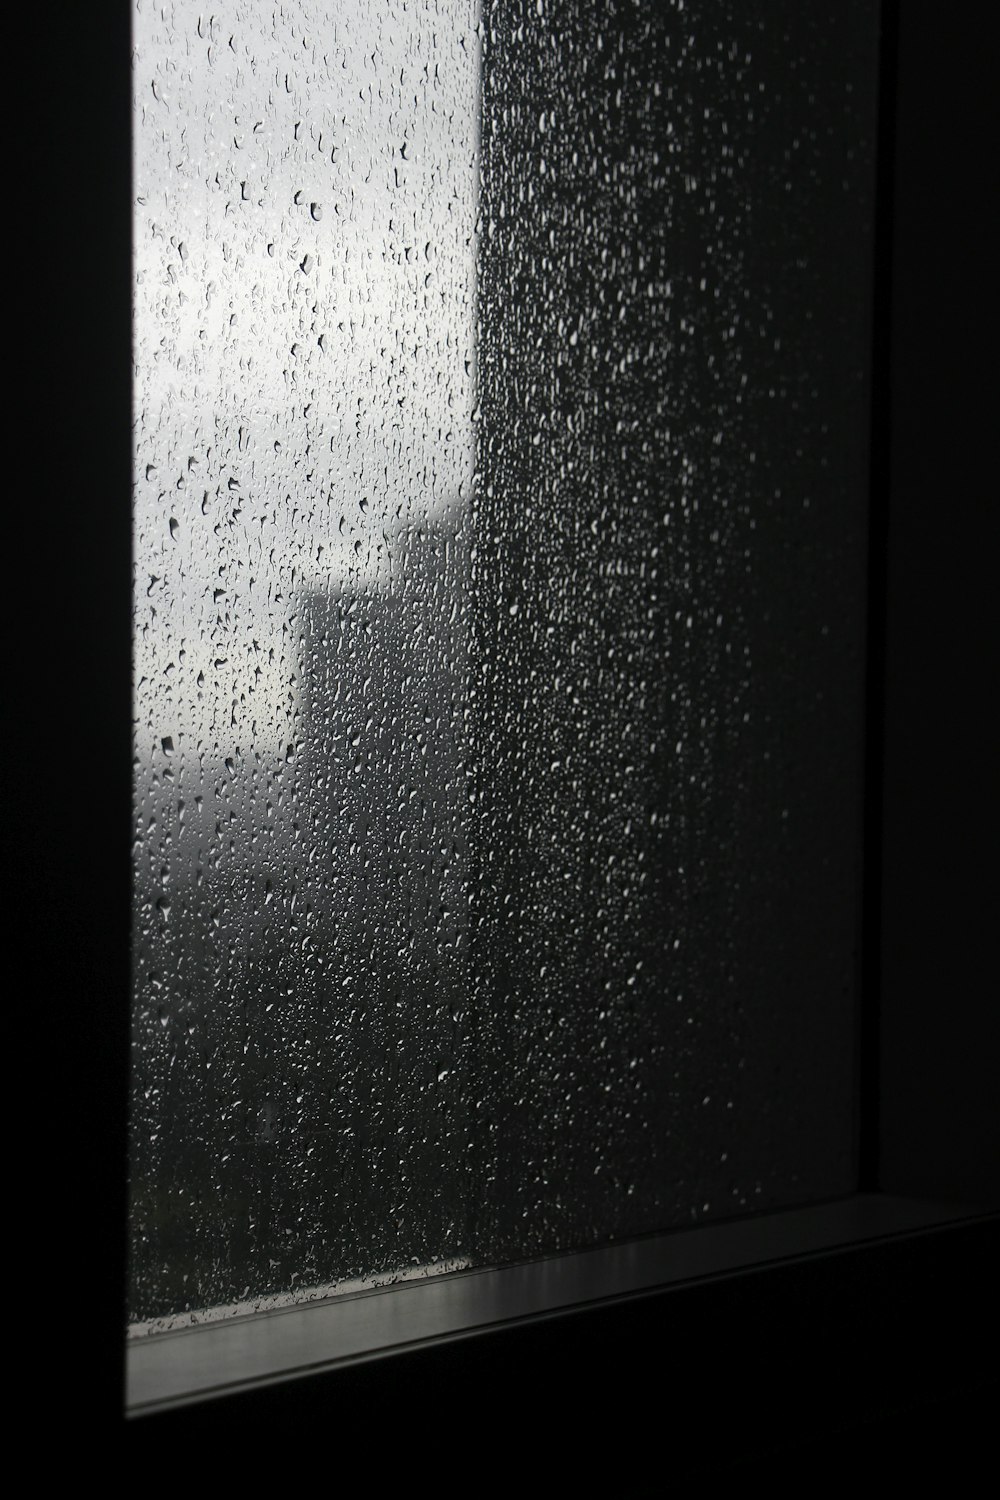 goccioline d'acqua sulla finestra di vetro